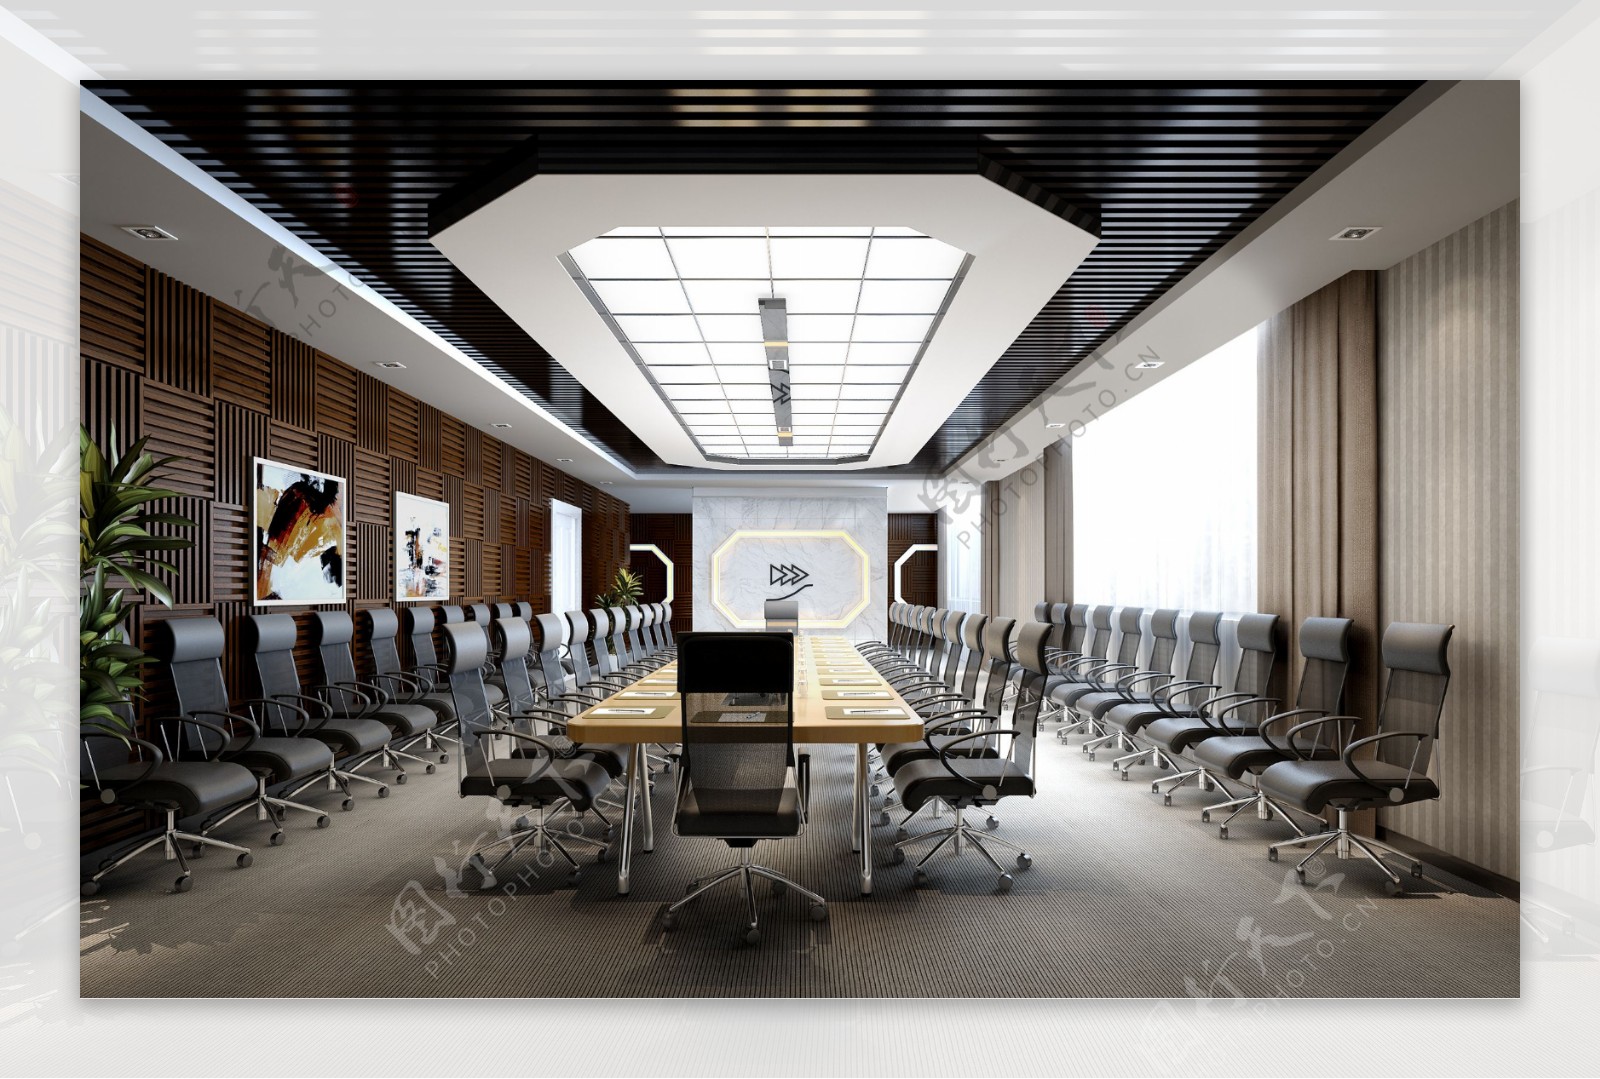 欧式时尚奢华风格办公室会议室装修效果图